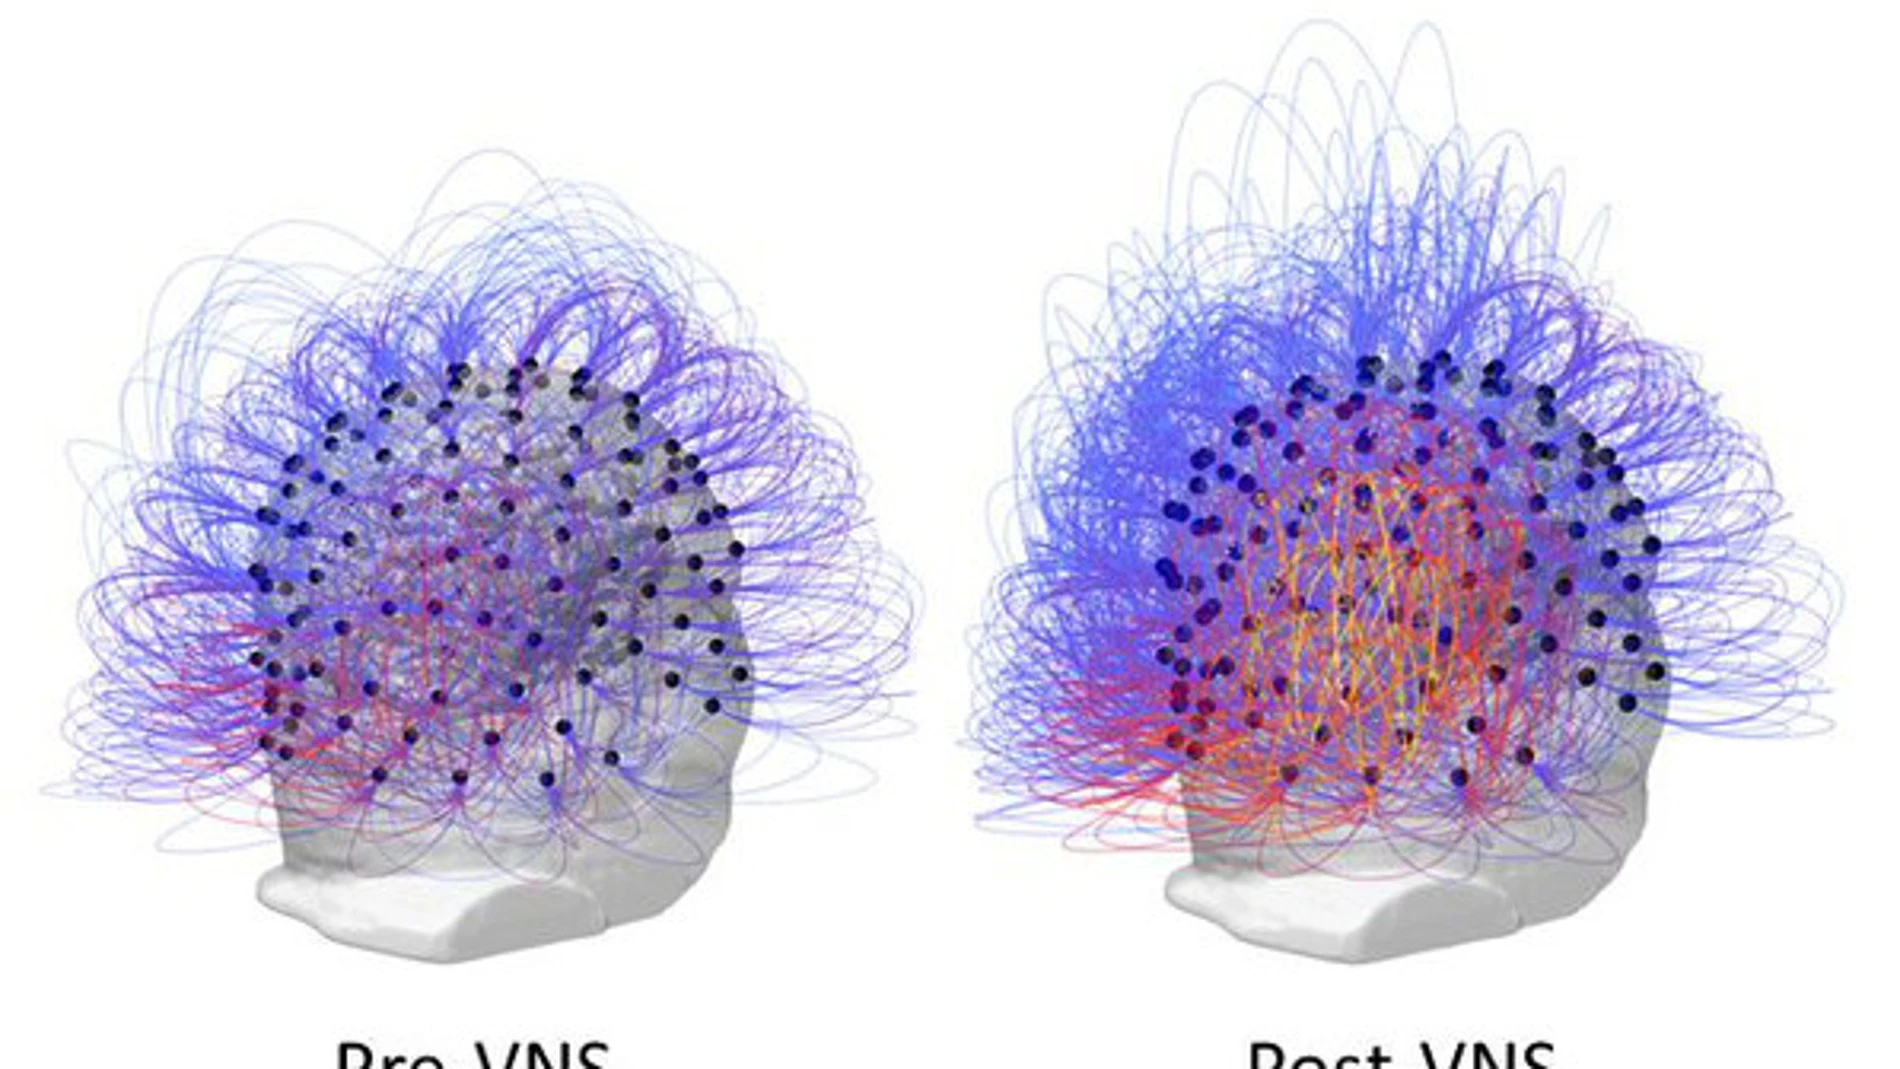 Flujo de información a través de los electrodos antes y después de la estimulación del nervio vago (a la derecha, post-VNS). A la derecha, los colores cálidos (amarillo y rojo) indican un aumento en la conectividad entre las regiones parietales posteriores. / Corazzol et al.